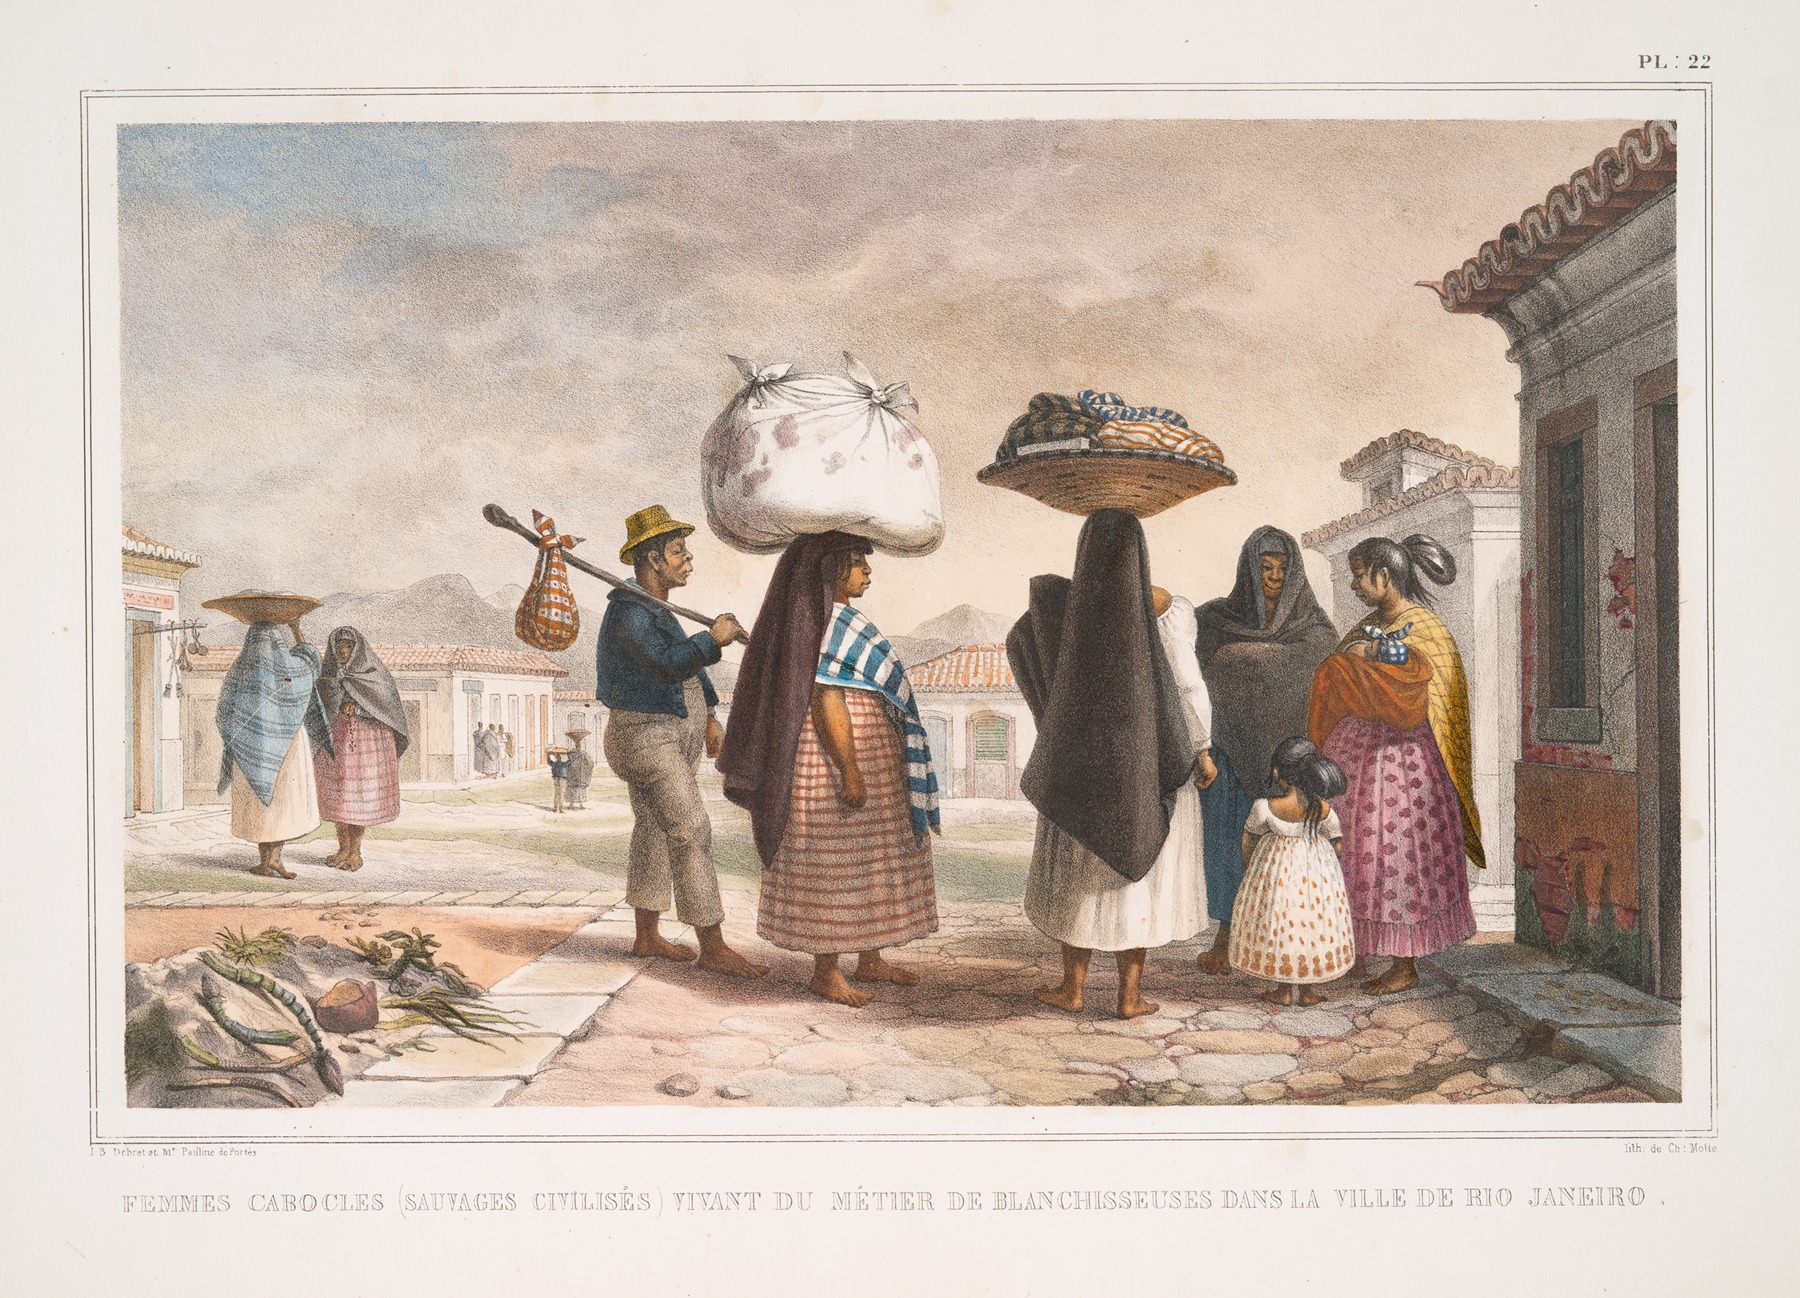 Jean Baptiste Debret - Femmes Cabocles (sauvages civilisés) vivant du métier de blanchisseuses dans la ville de Rio Janeiro